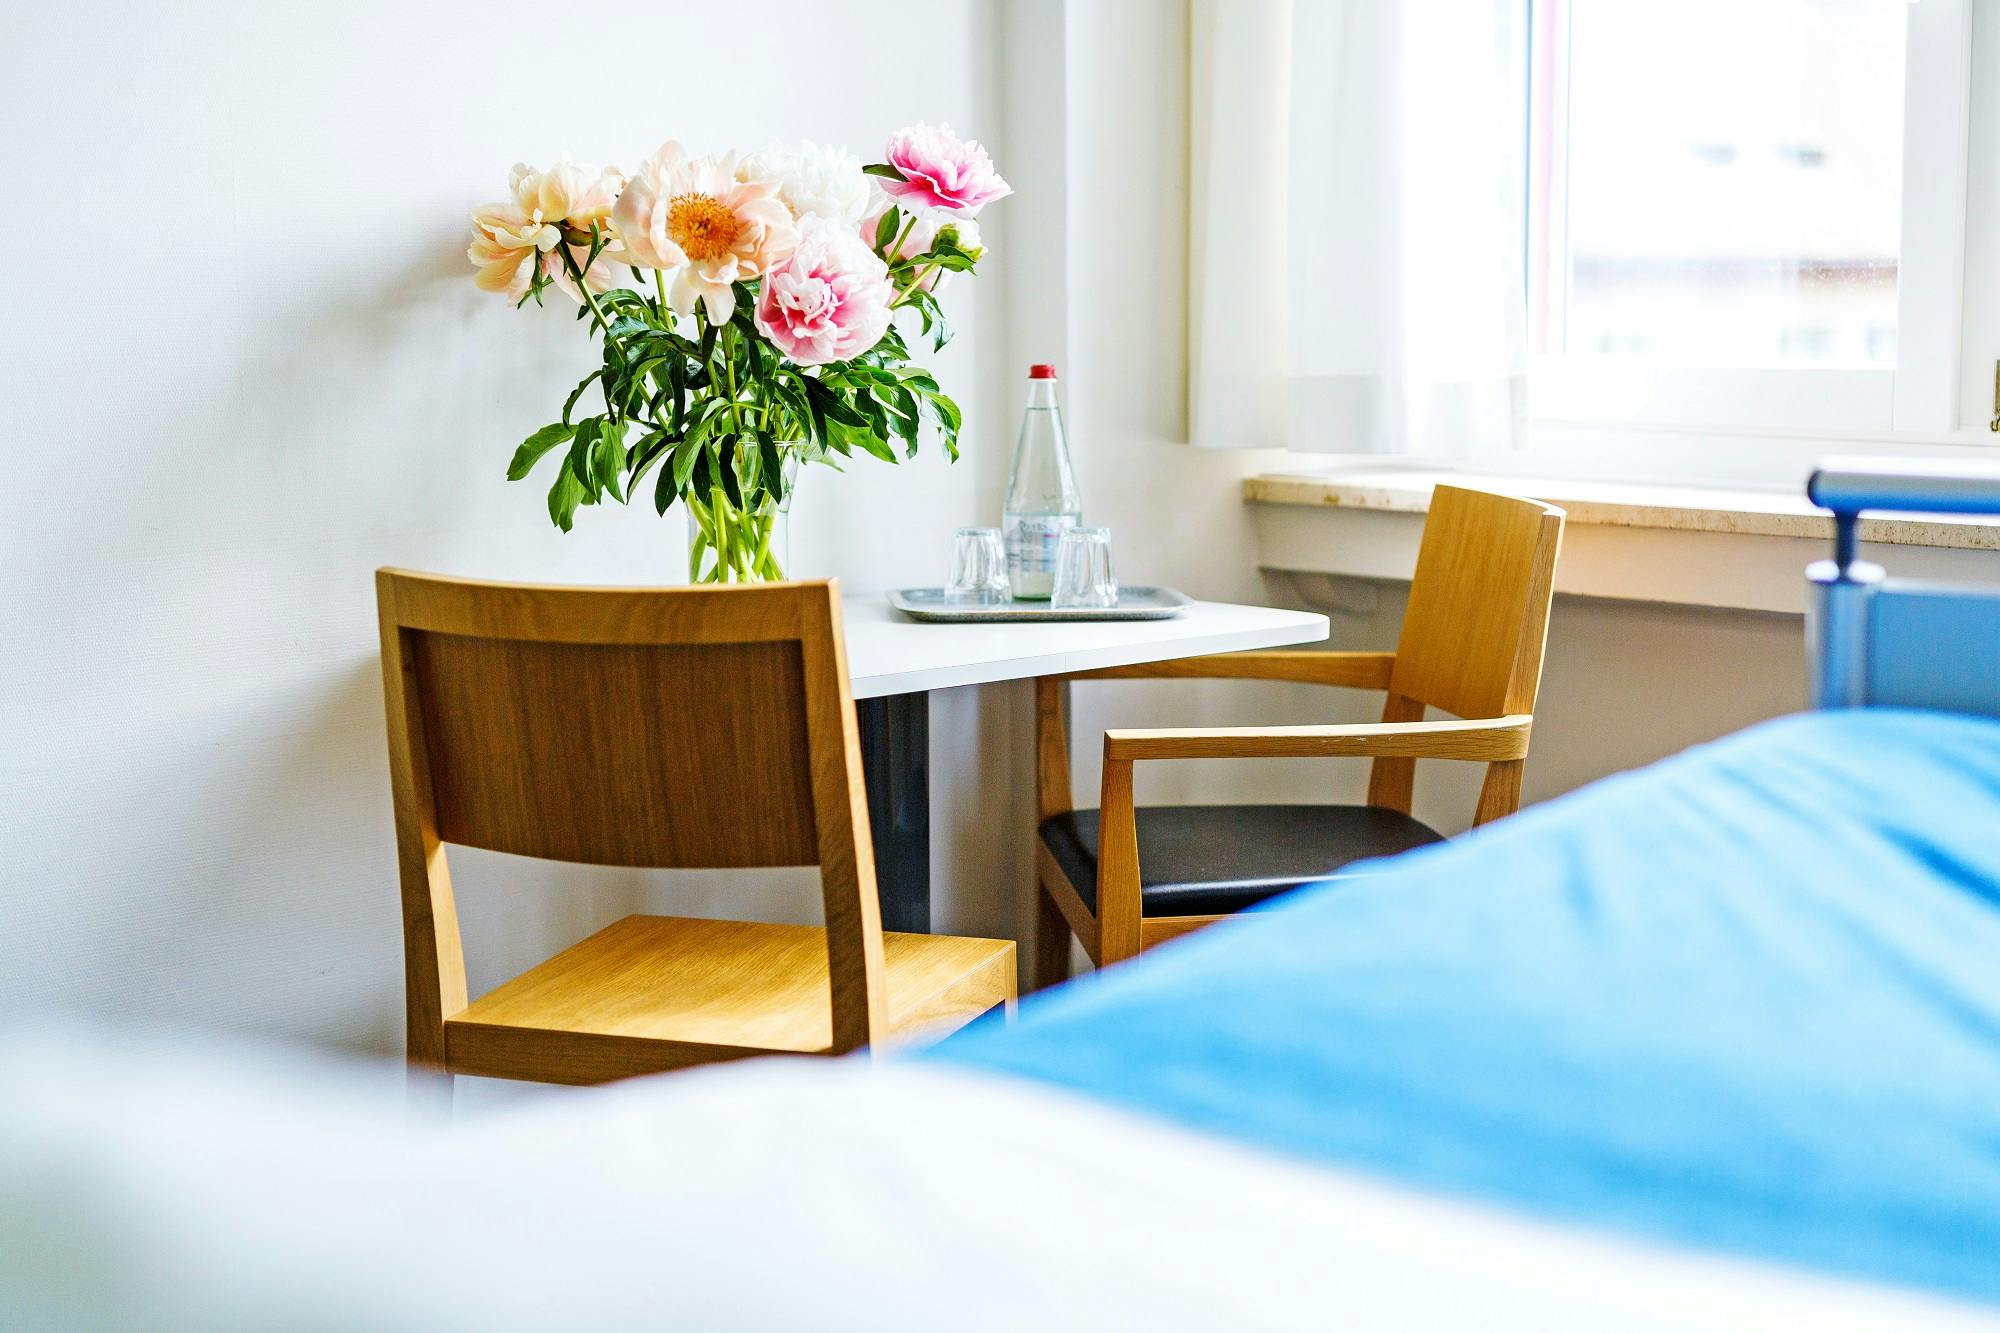 Gemütliches Zimmer mit Blumenstrauß auf dem Tisch und Holzstühlen.